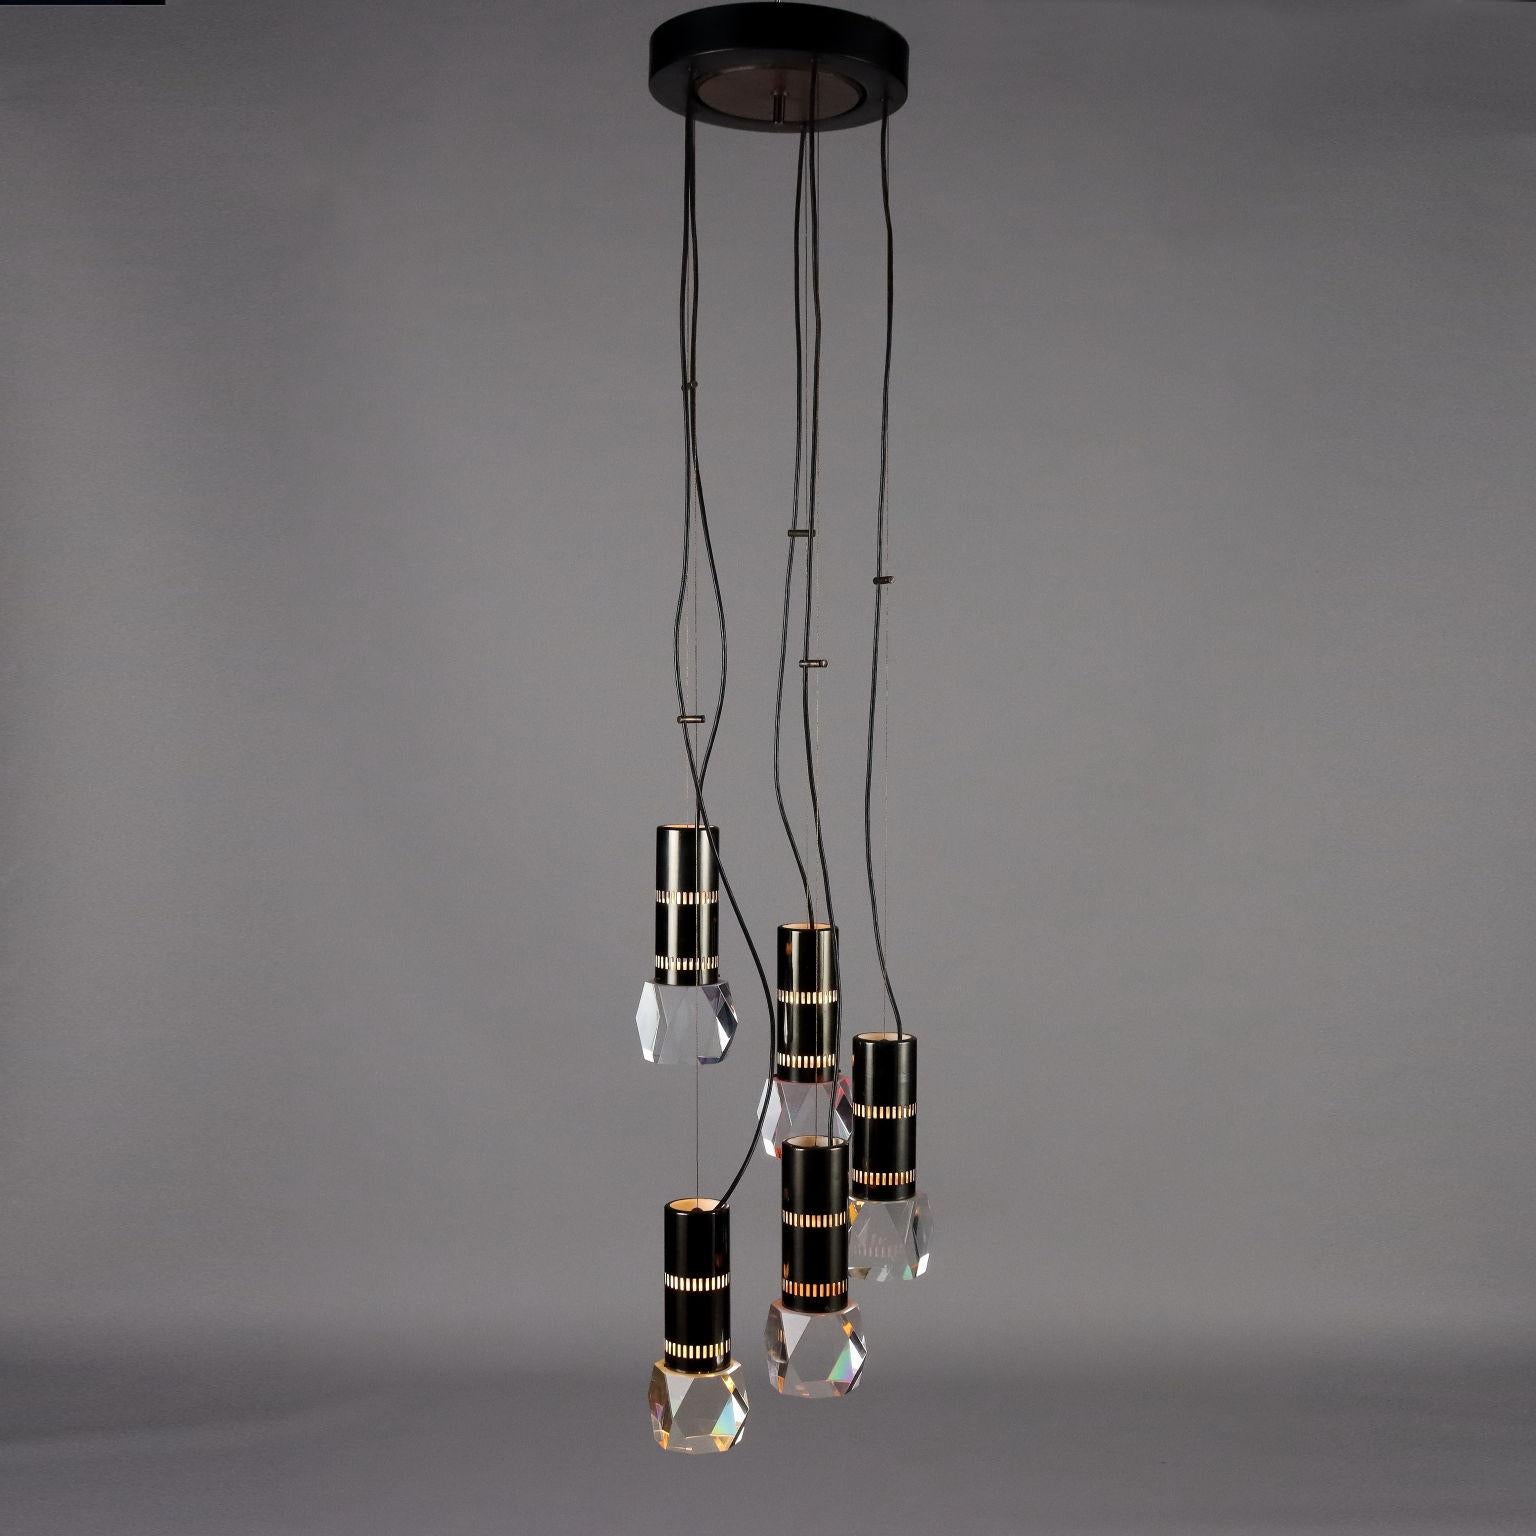 Soffittenlampe mit 5 Köpfen aus Aluminium, Armaturen und Diffusoren in Vetro. 